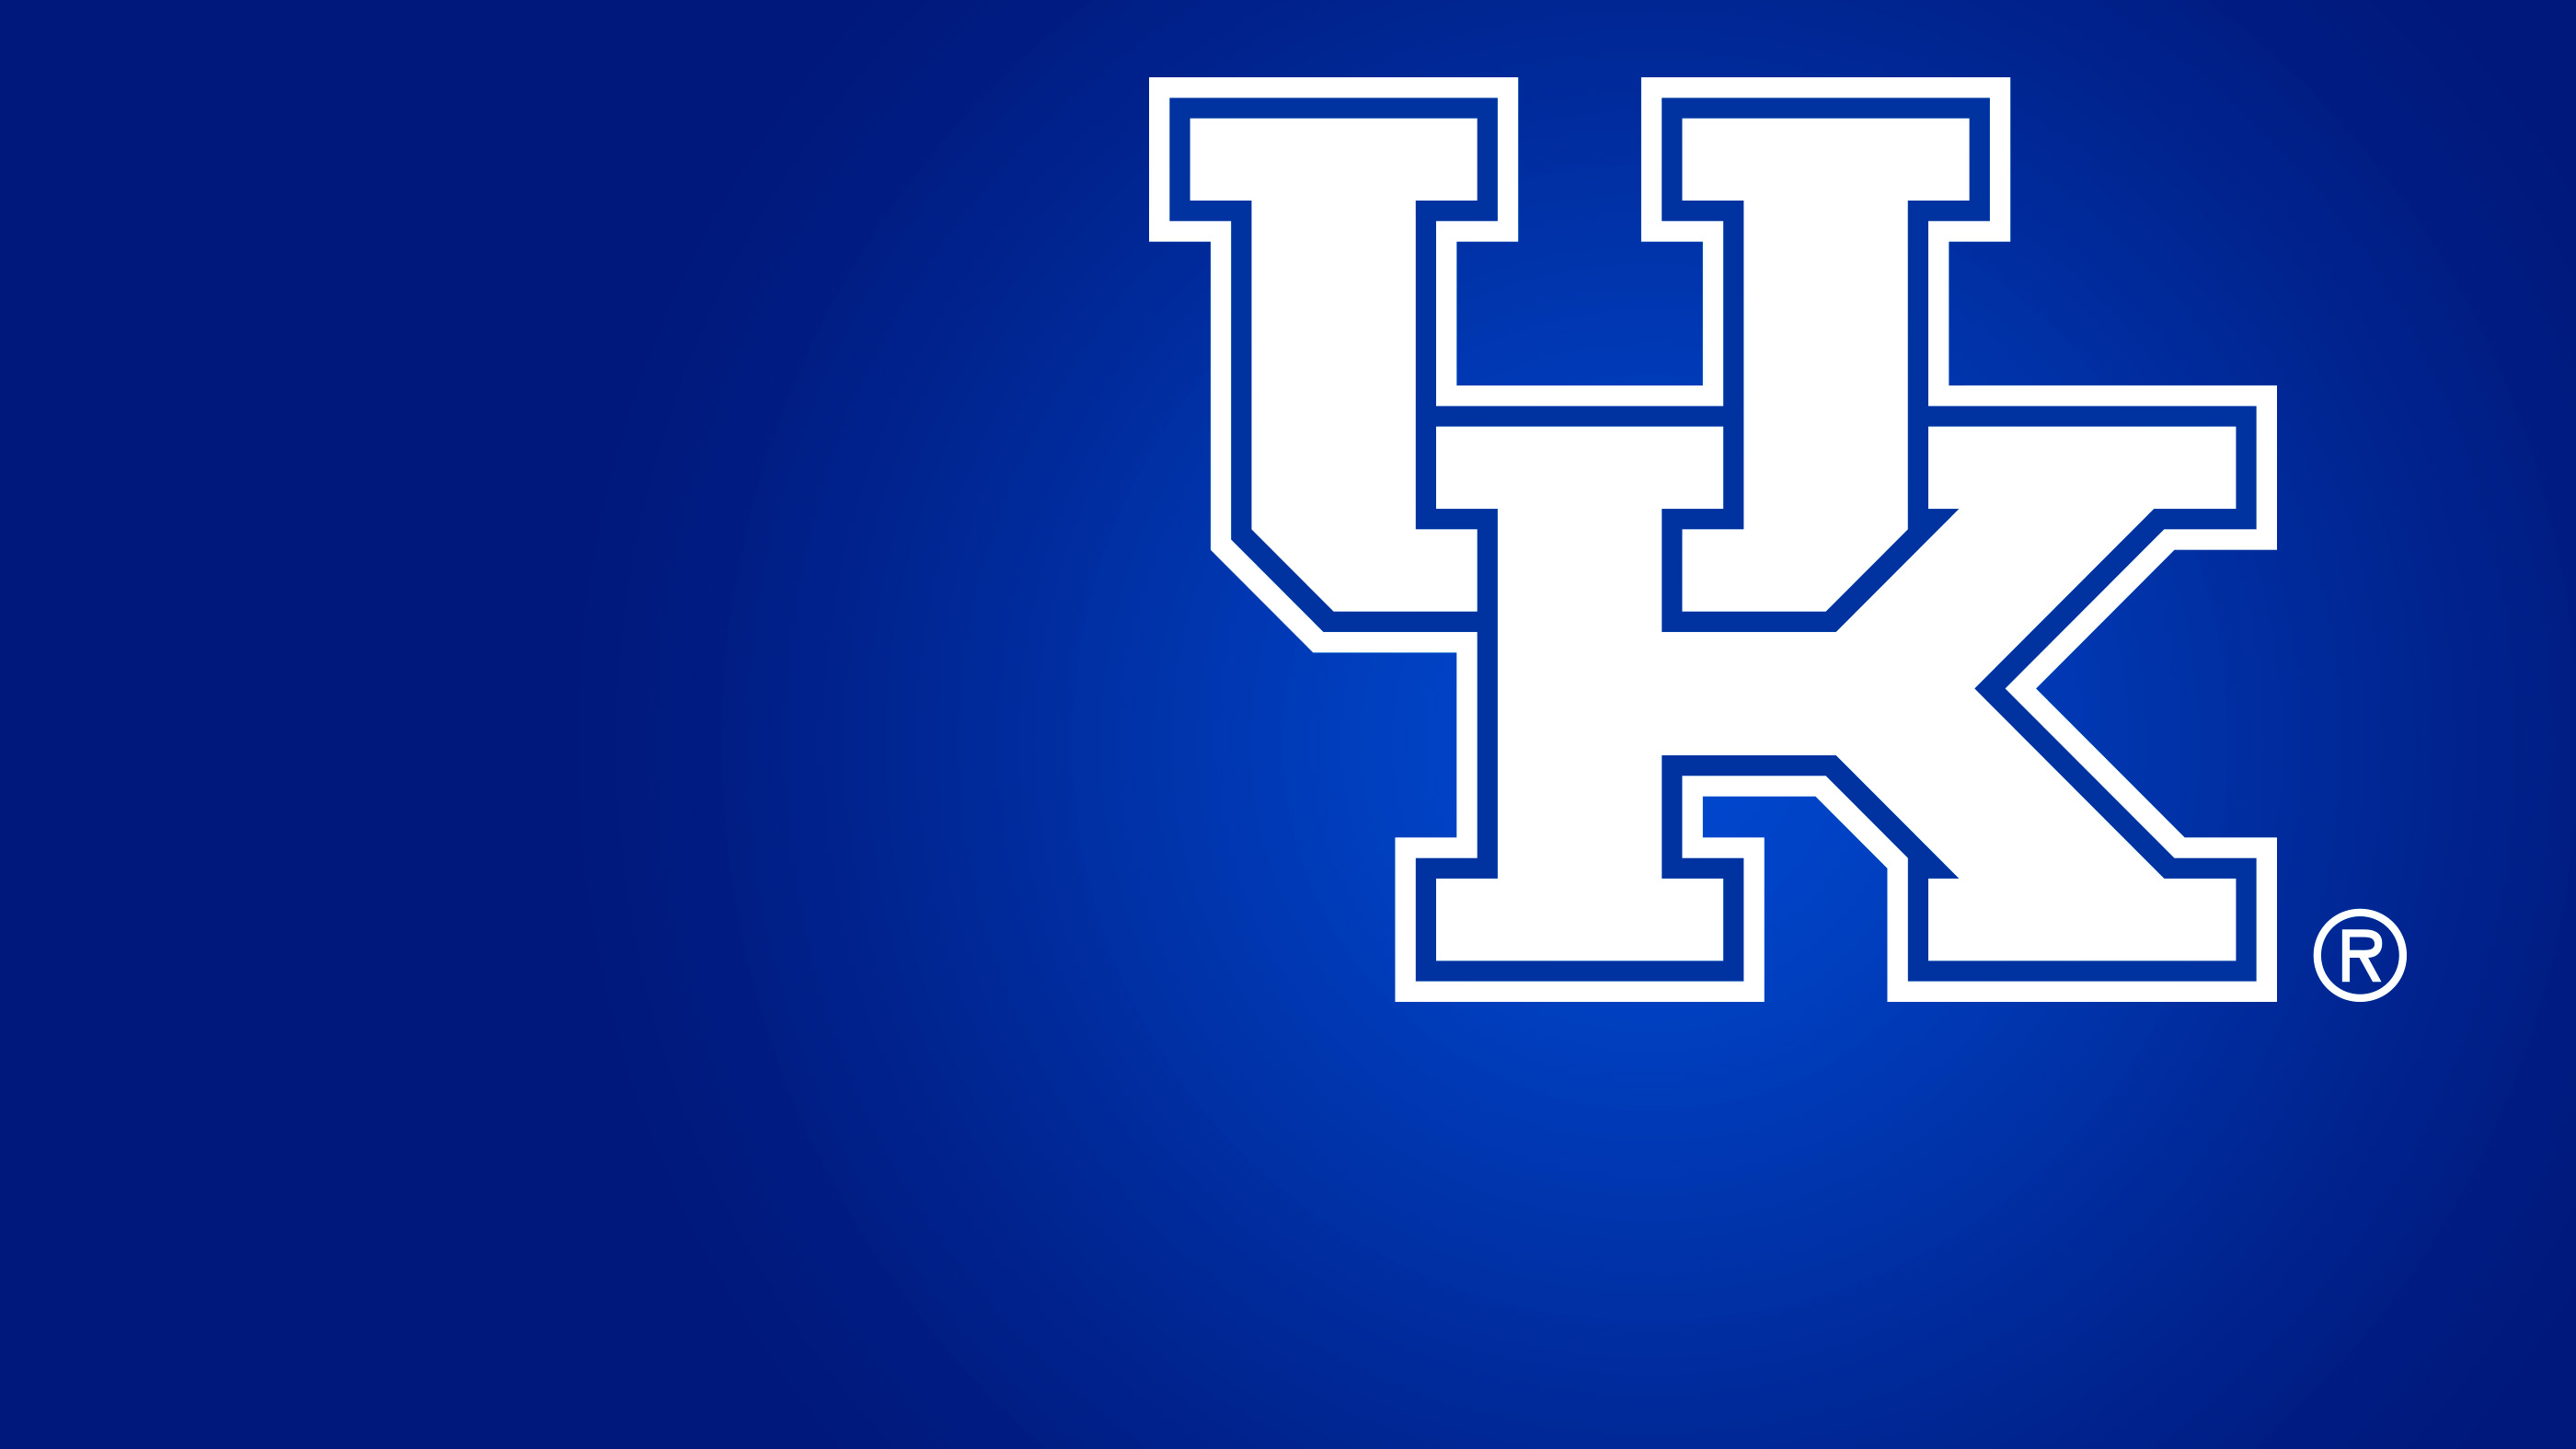 HD Kentucky Wildcats Backgrounds | PixelsTalk.Net2800 x 1575